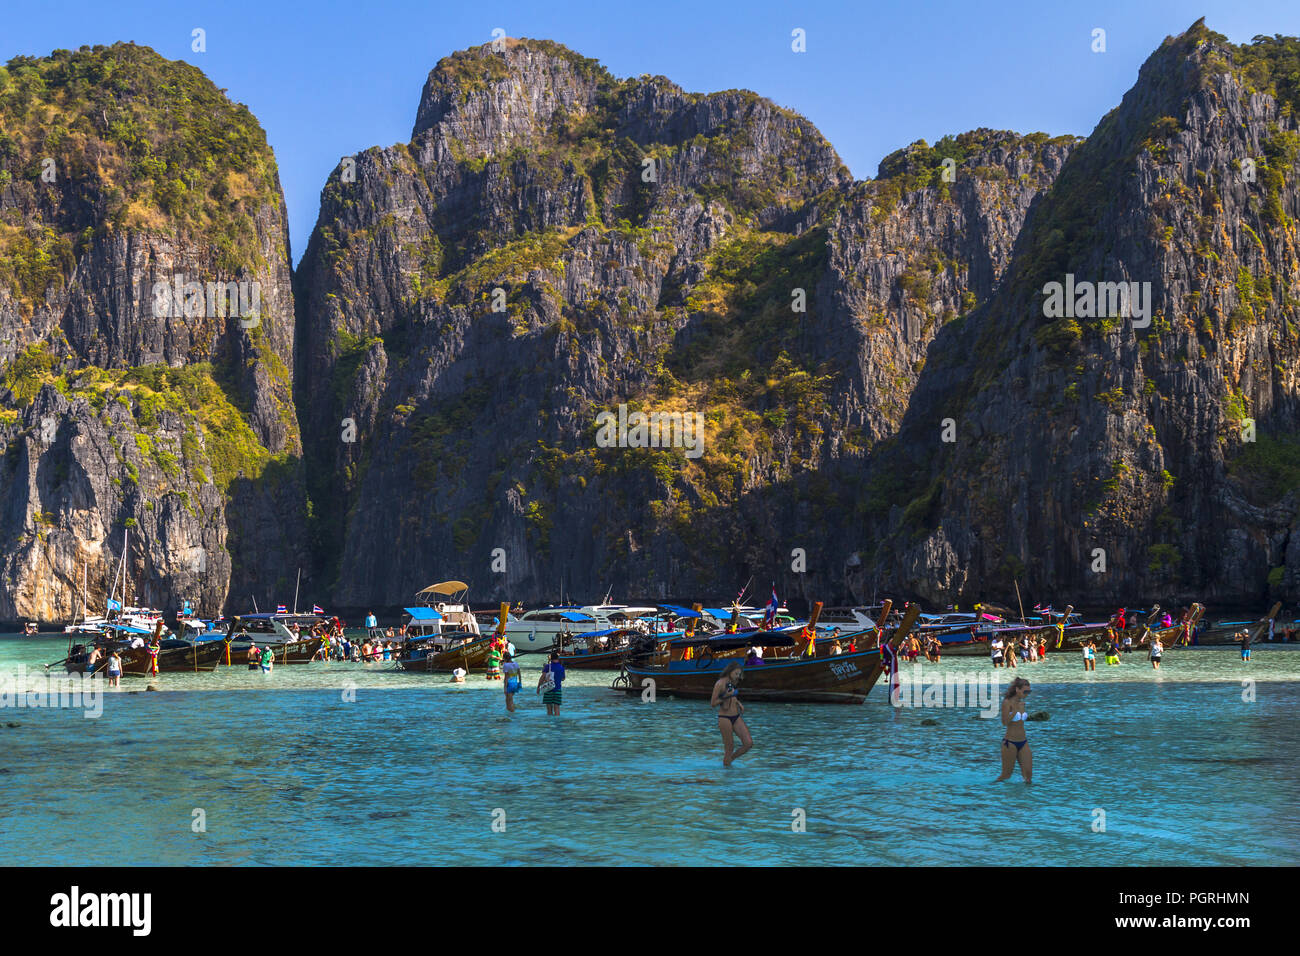 Editorial: März 2016, Thailand Insel, schöne turquose Wasser in einer Bucht mit Felsen auf der Krabi Phi Phi Inseln. Lange Boote und Menschen sind "Laden" Stockfoto